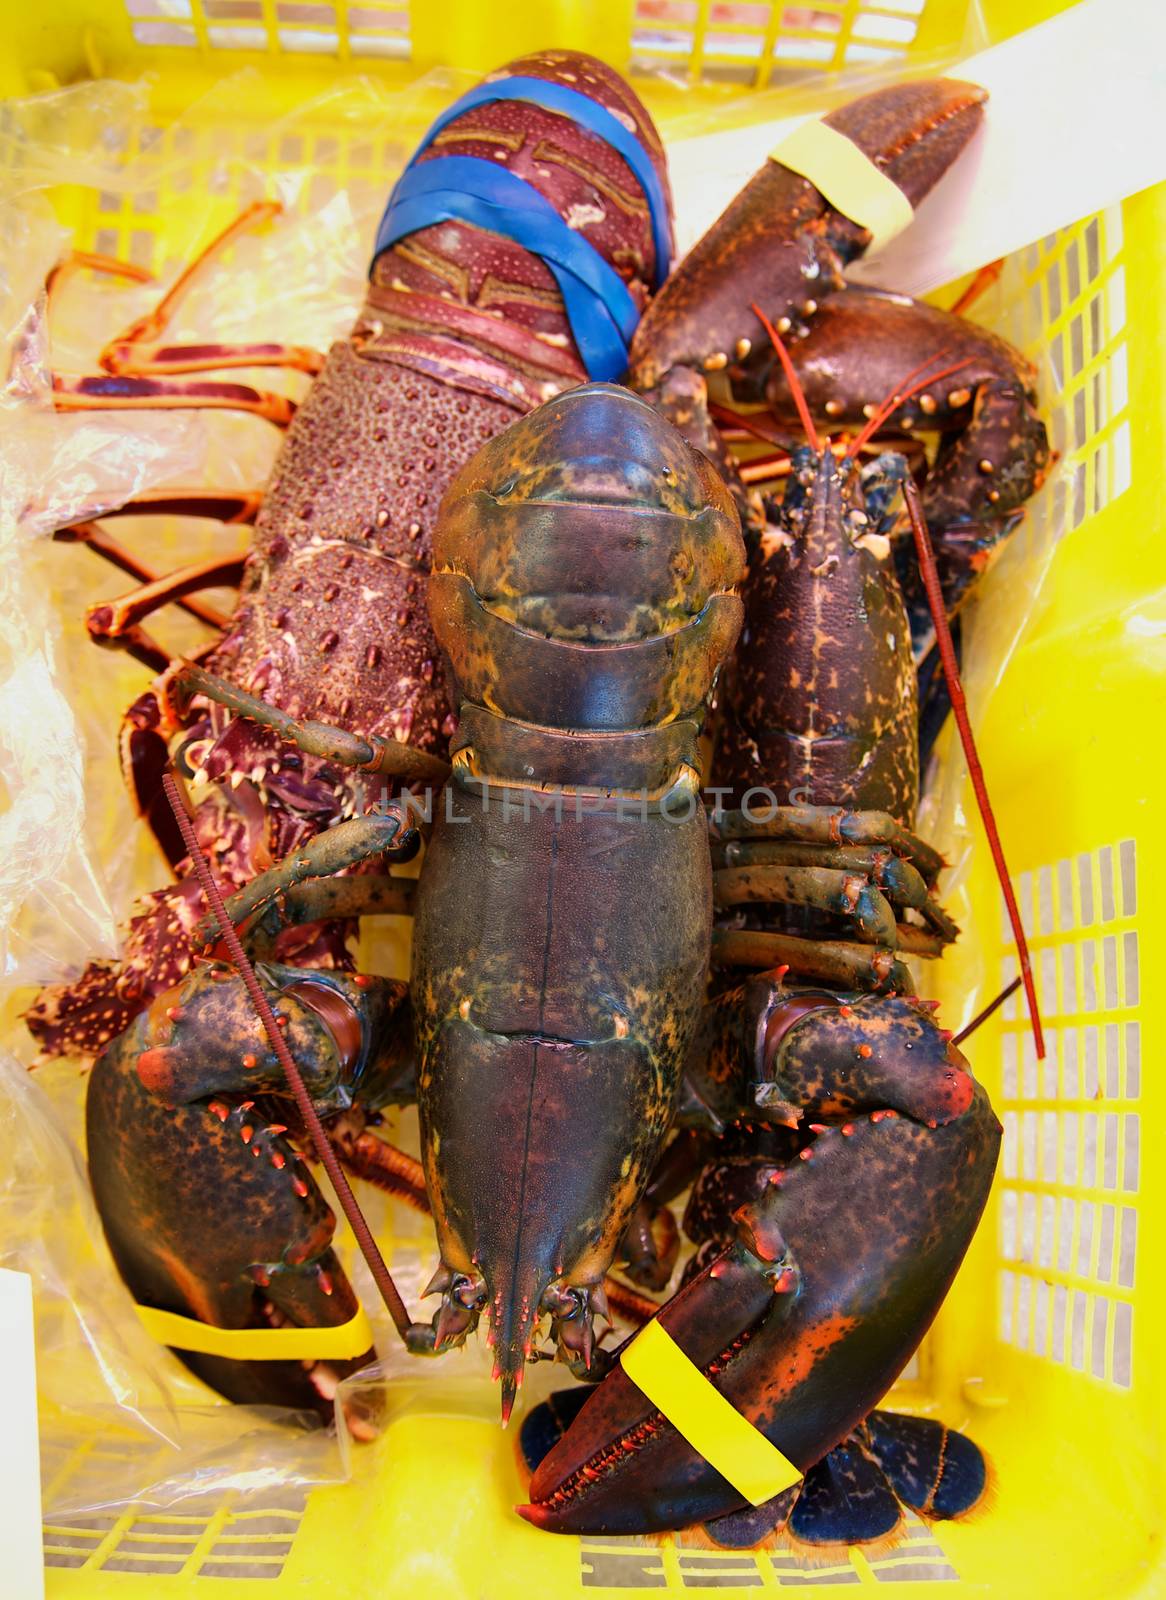 Lobsters in Shopping Basket by zhekos